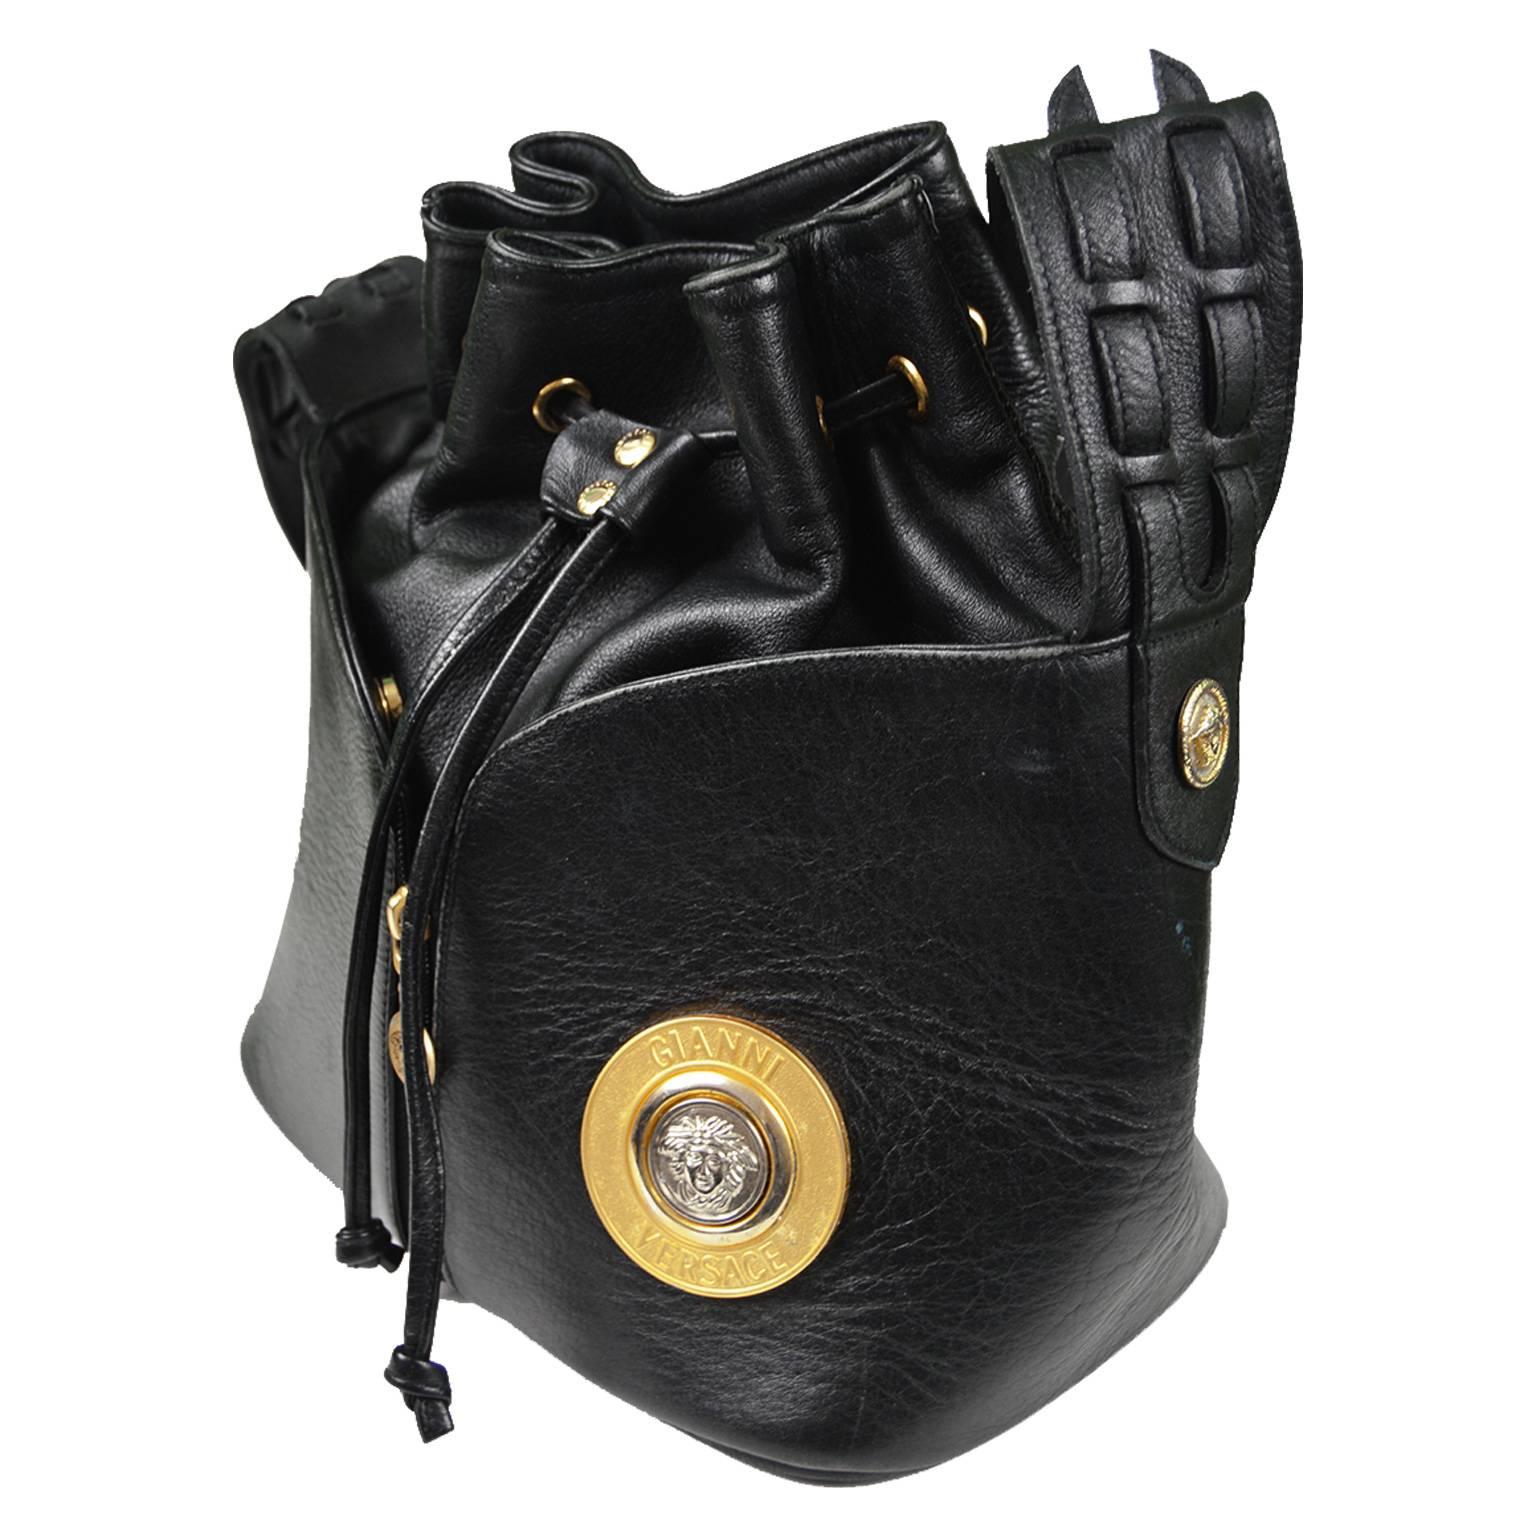 Gianni Versace Vintage 1990s Black Leather Gold & Silver Drawstring Shoulder Bag